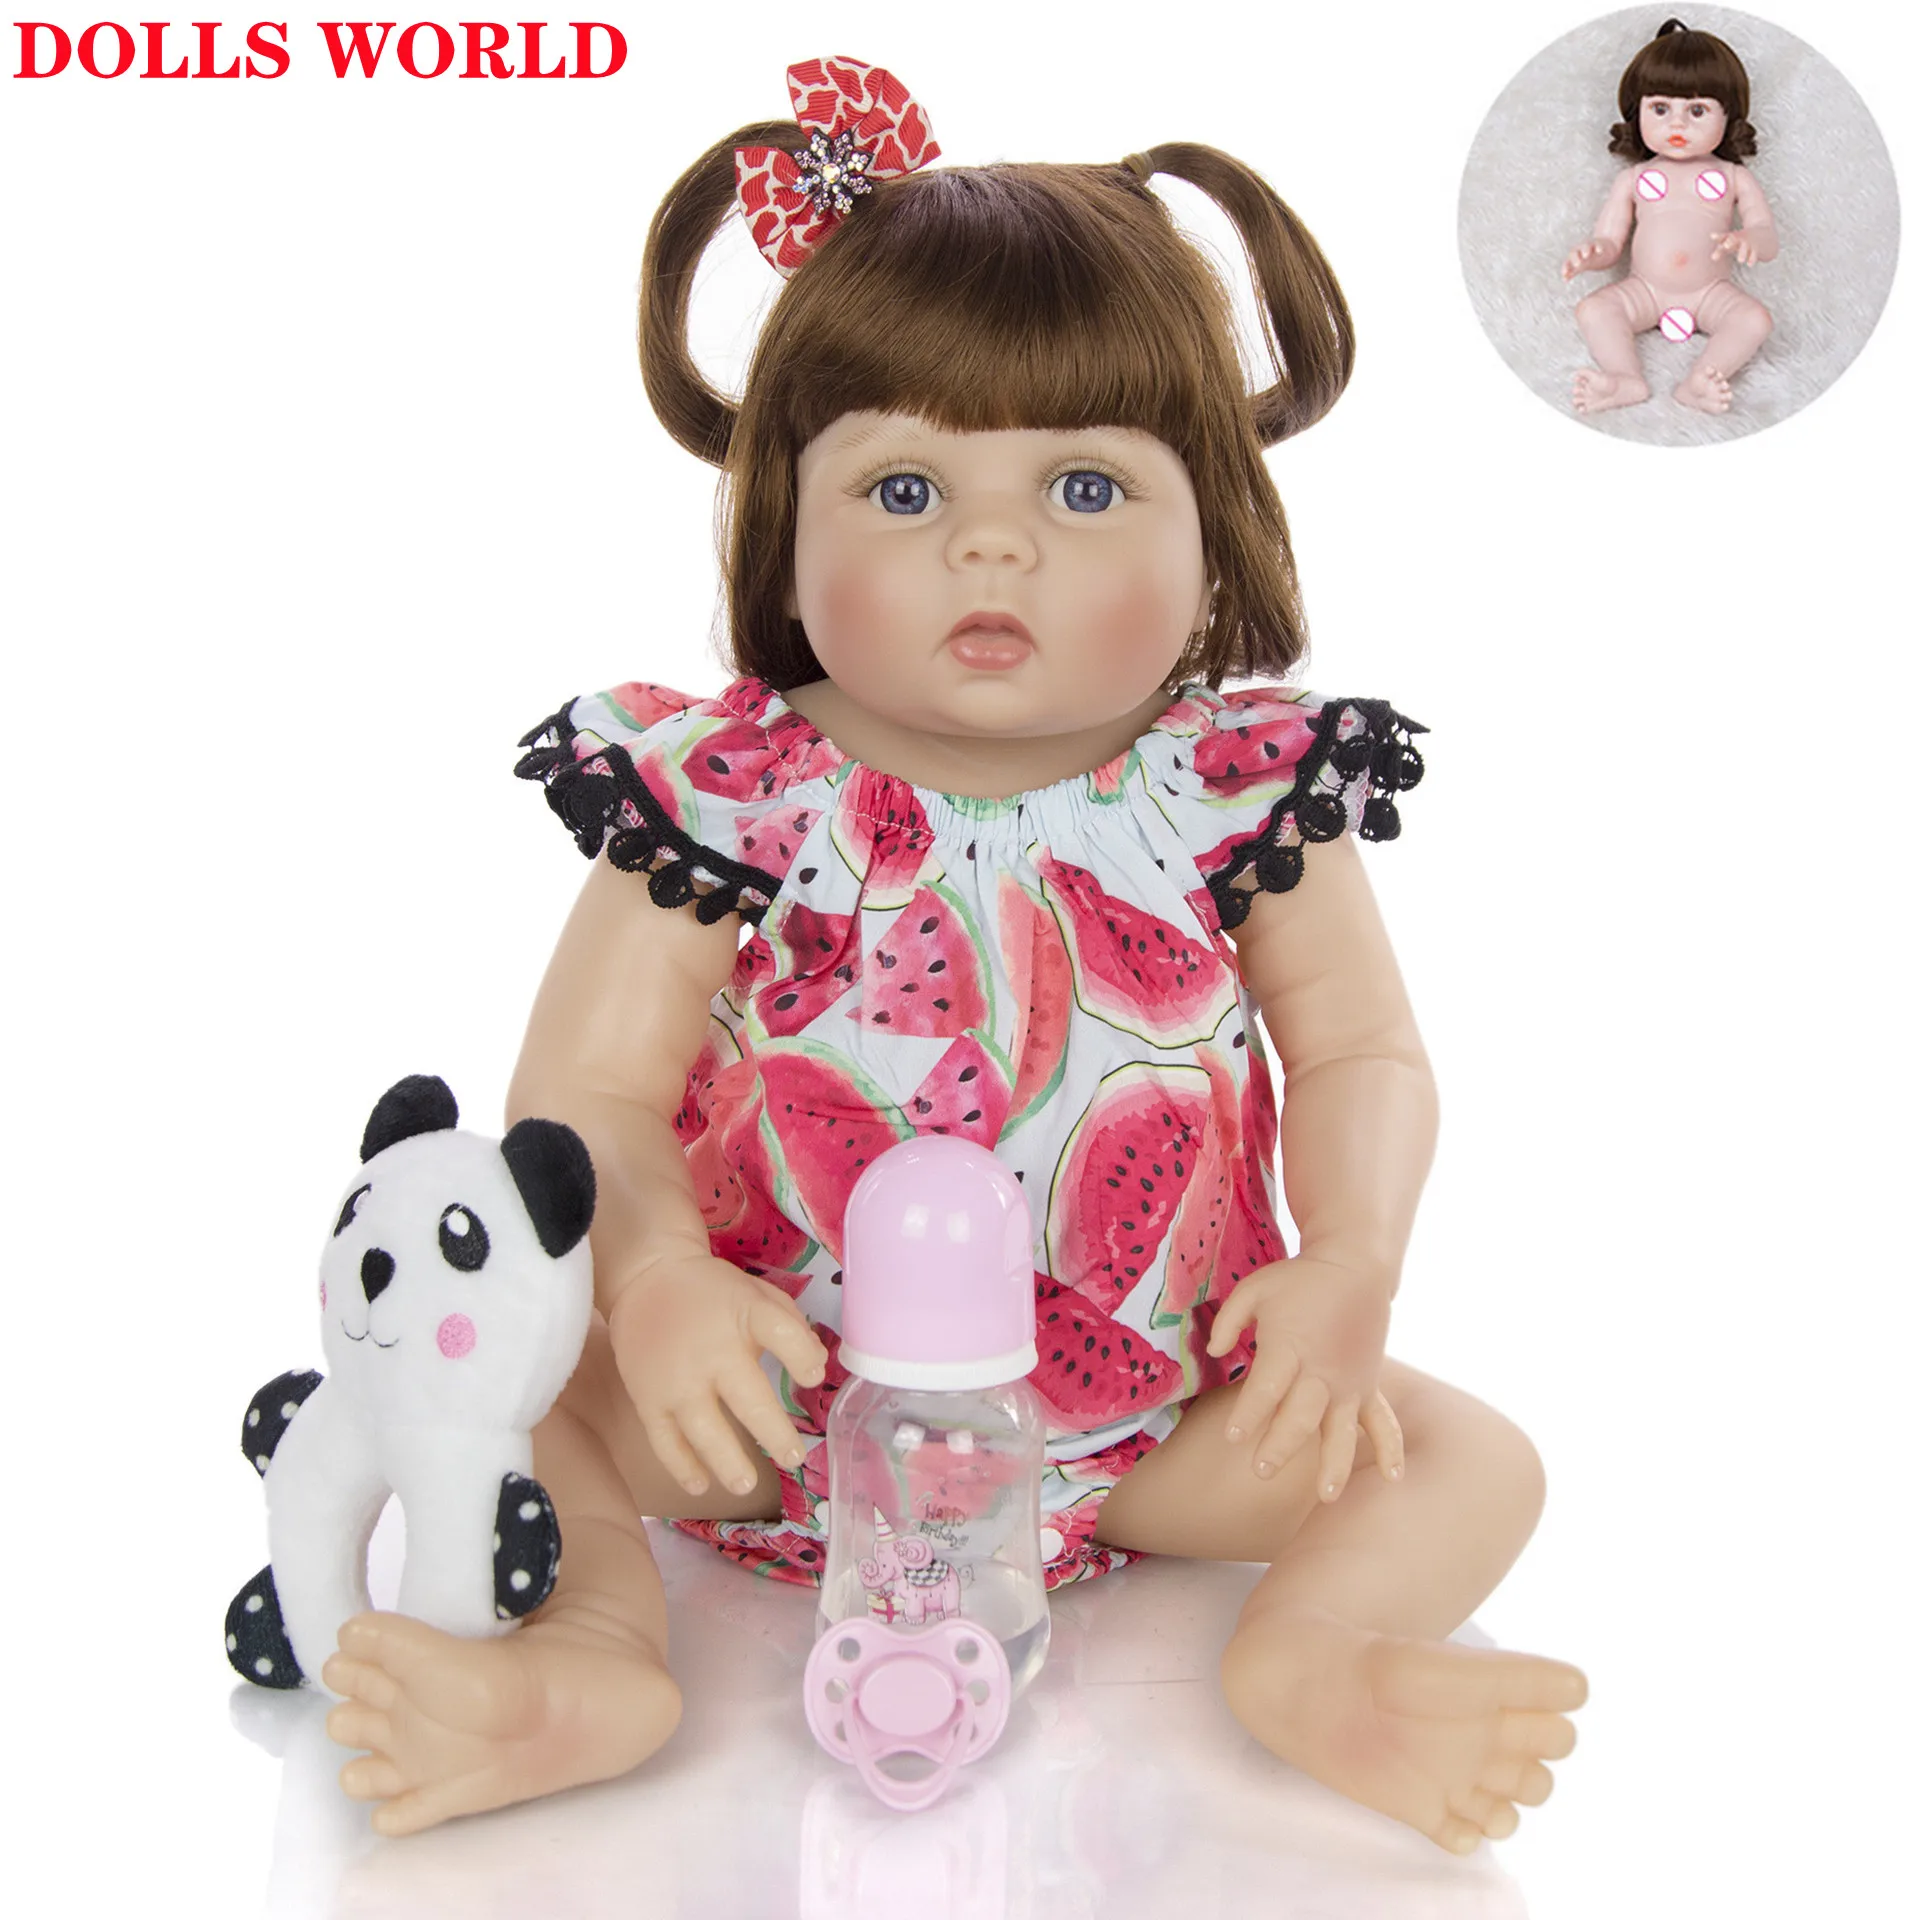 

Куклы Новорожденные, 23 дюйма, полностью Силиконовое тело, кукла новорожденная, 57 см, куклы Новорожденные для детей, подарки на день ребенка